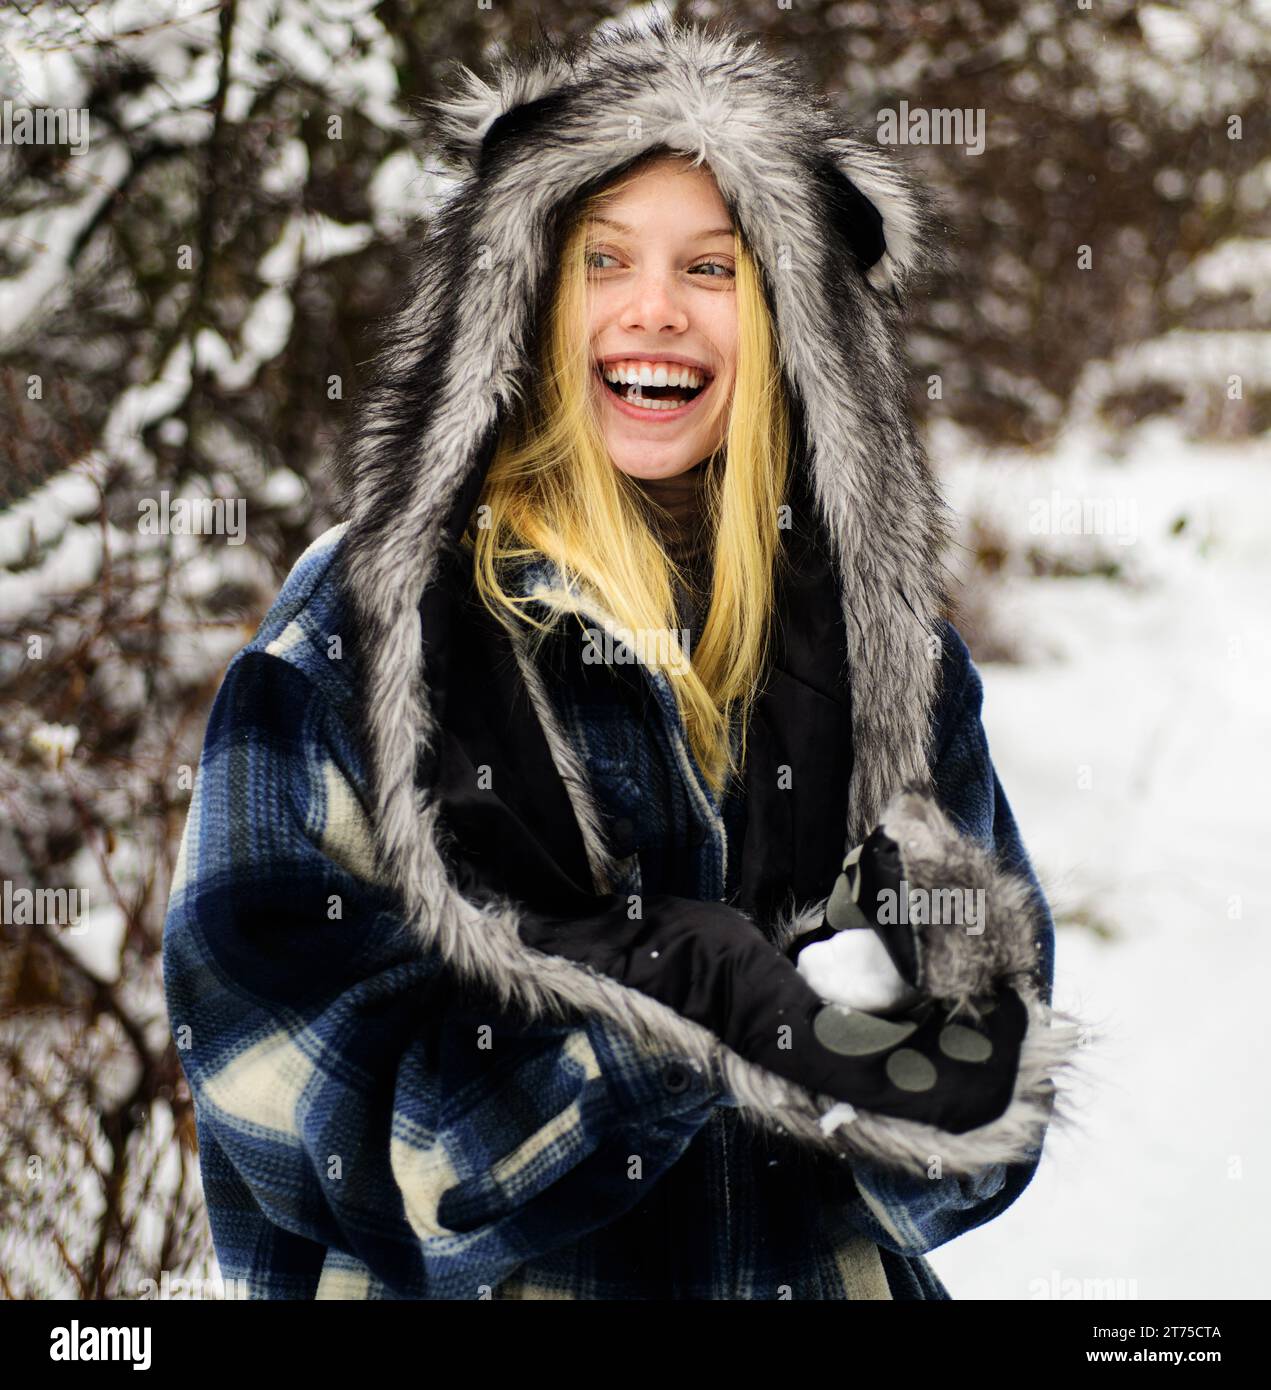 Winterzeit. Glückliche Frau im schneebedeckten Winterpark in warmer Kleidung mit Schneeball in den Händen. Lächelndes Wintermädchen, das mit Schnee spielt. Schönes weibliches Model in Stockfoto